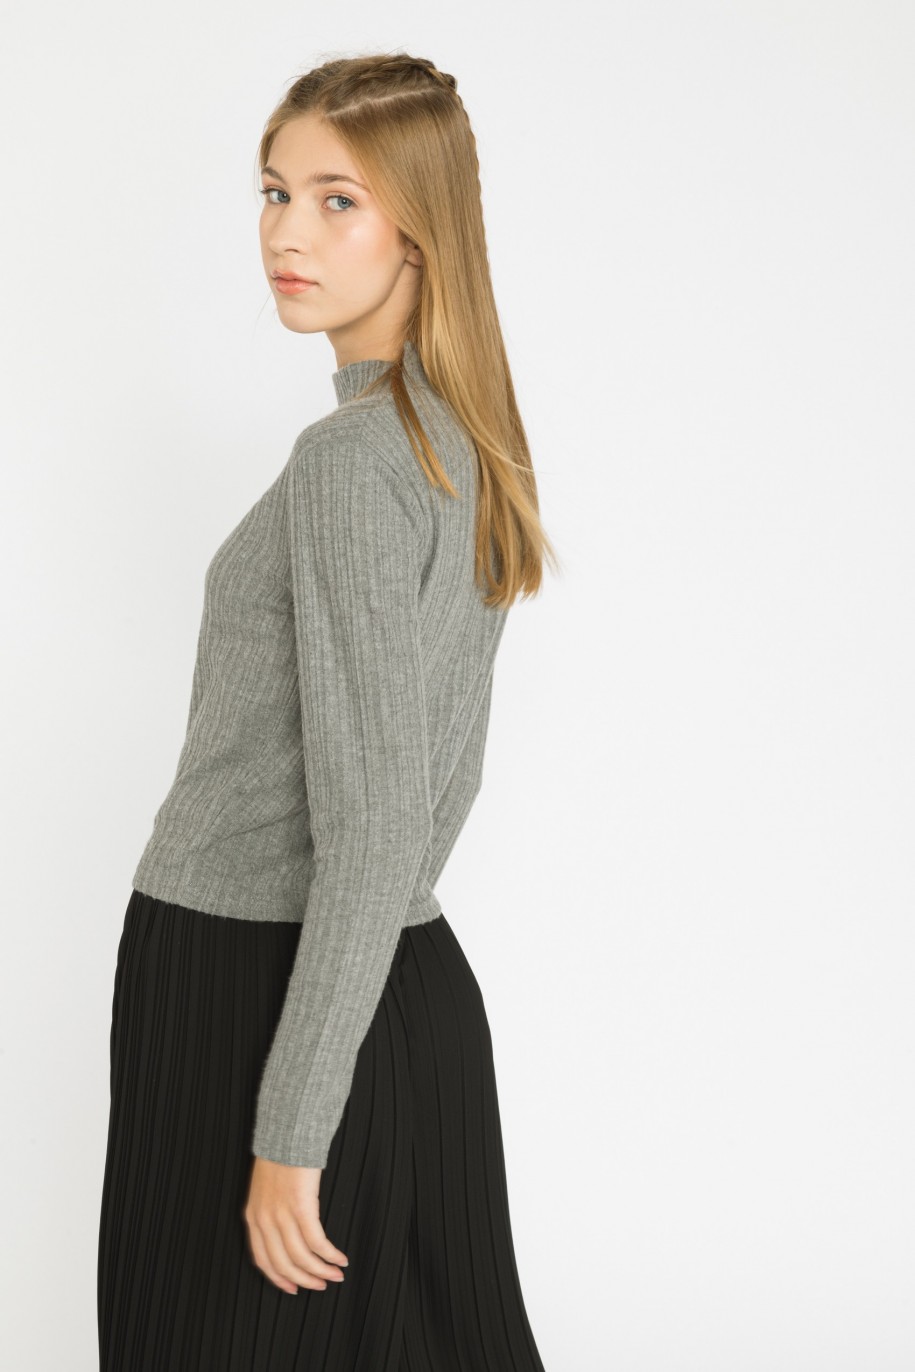 Szary sweter dla dziewczyny z długim rękawem i półgolfem - 31092